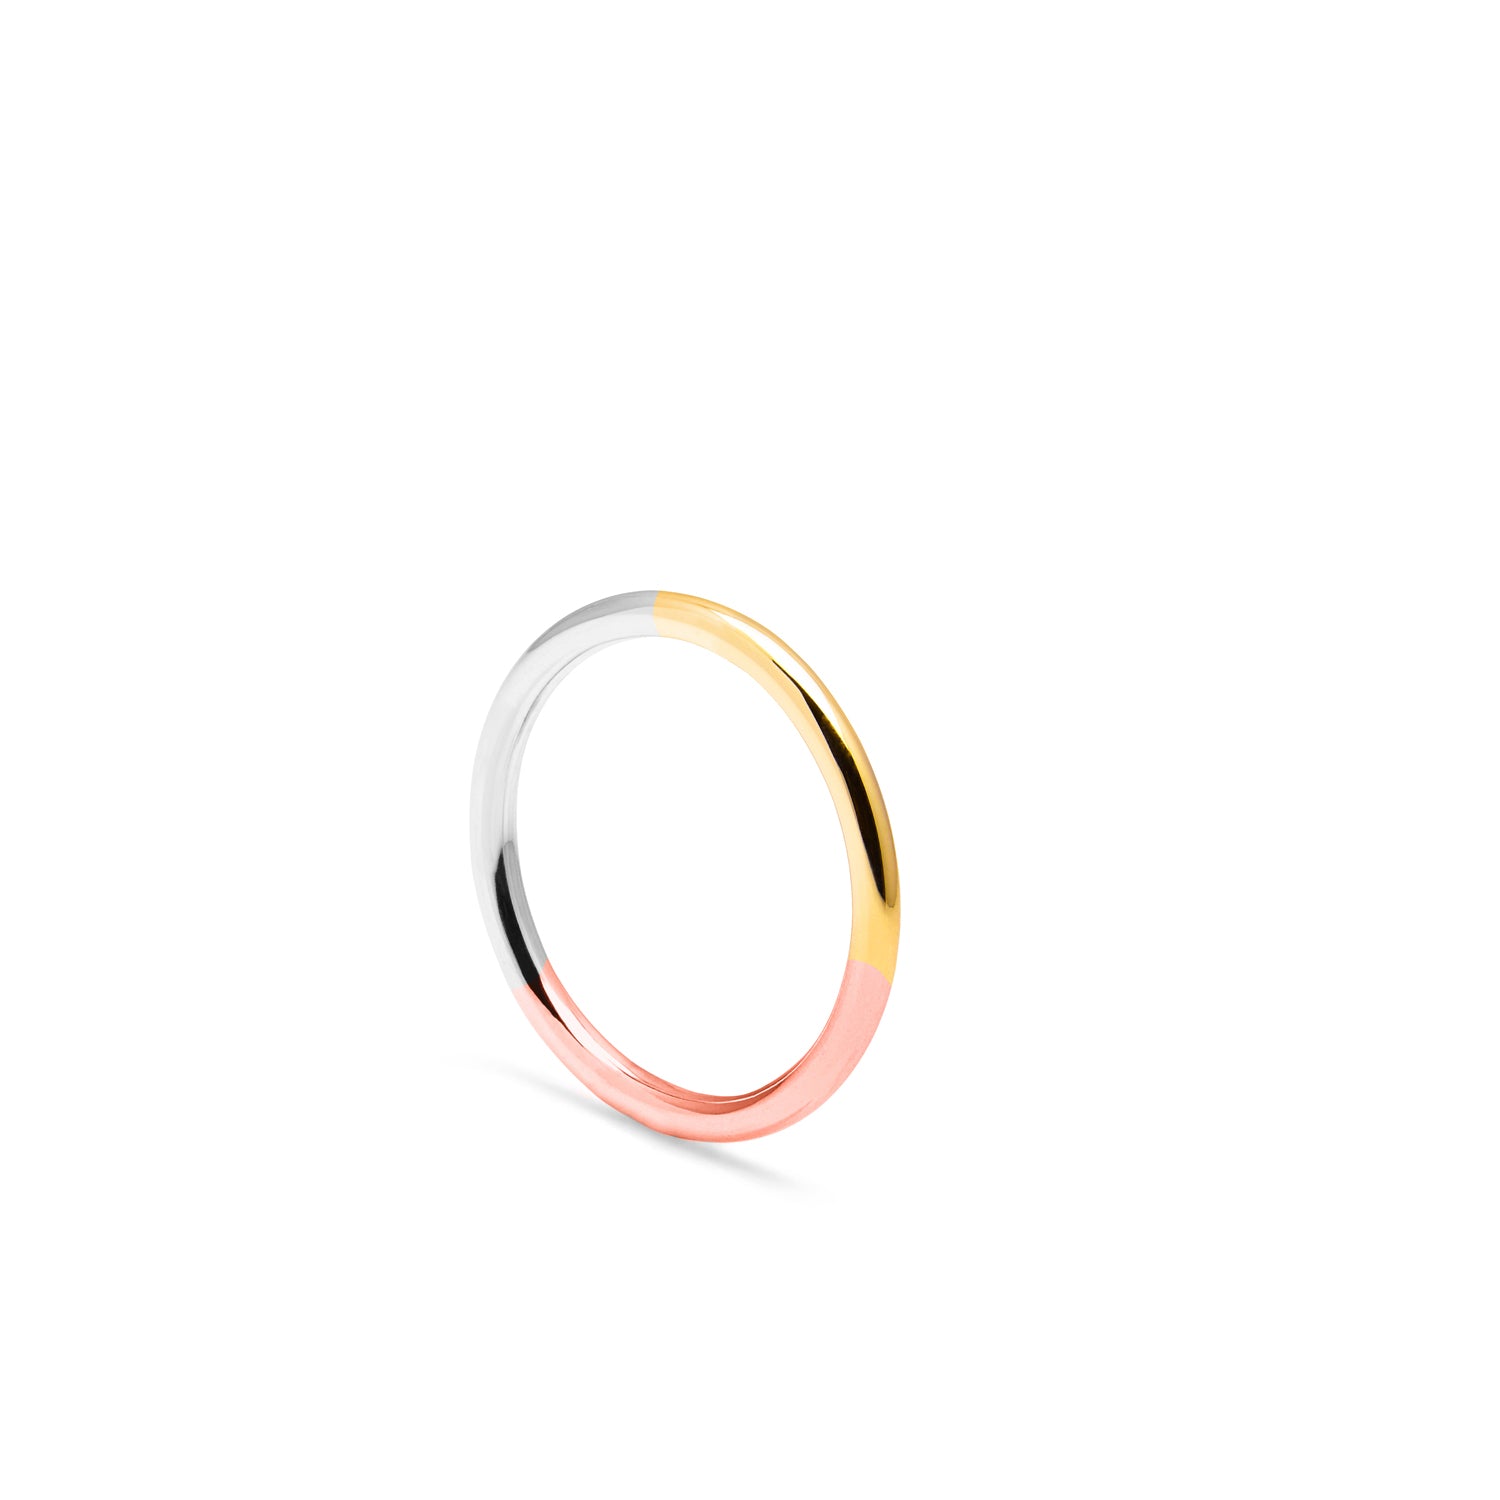 Three-tone Round Ring - 9k Yellow, Rose & White